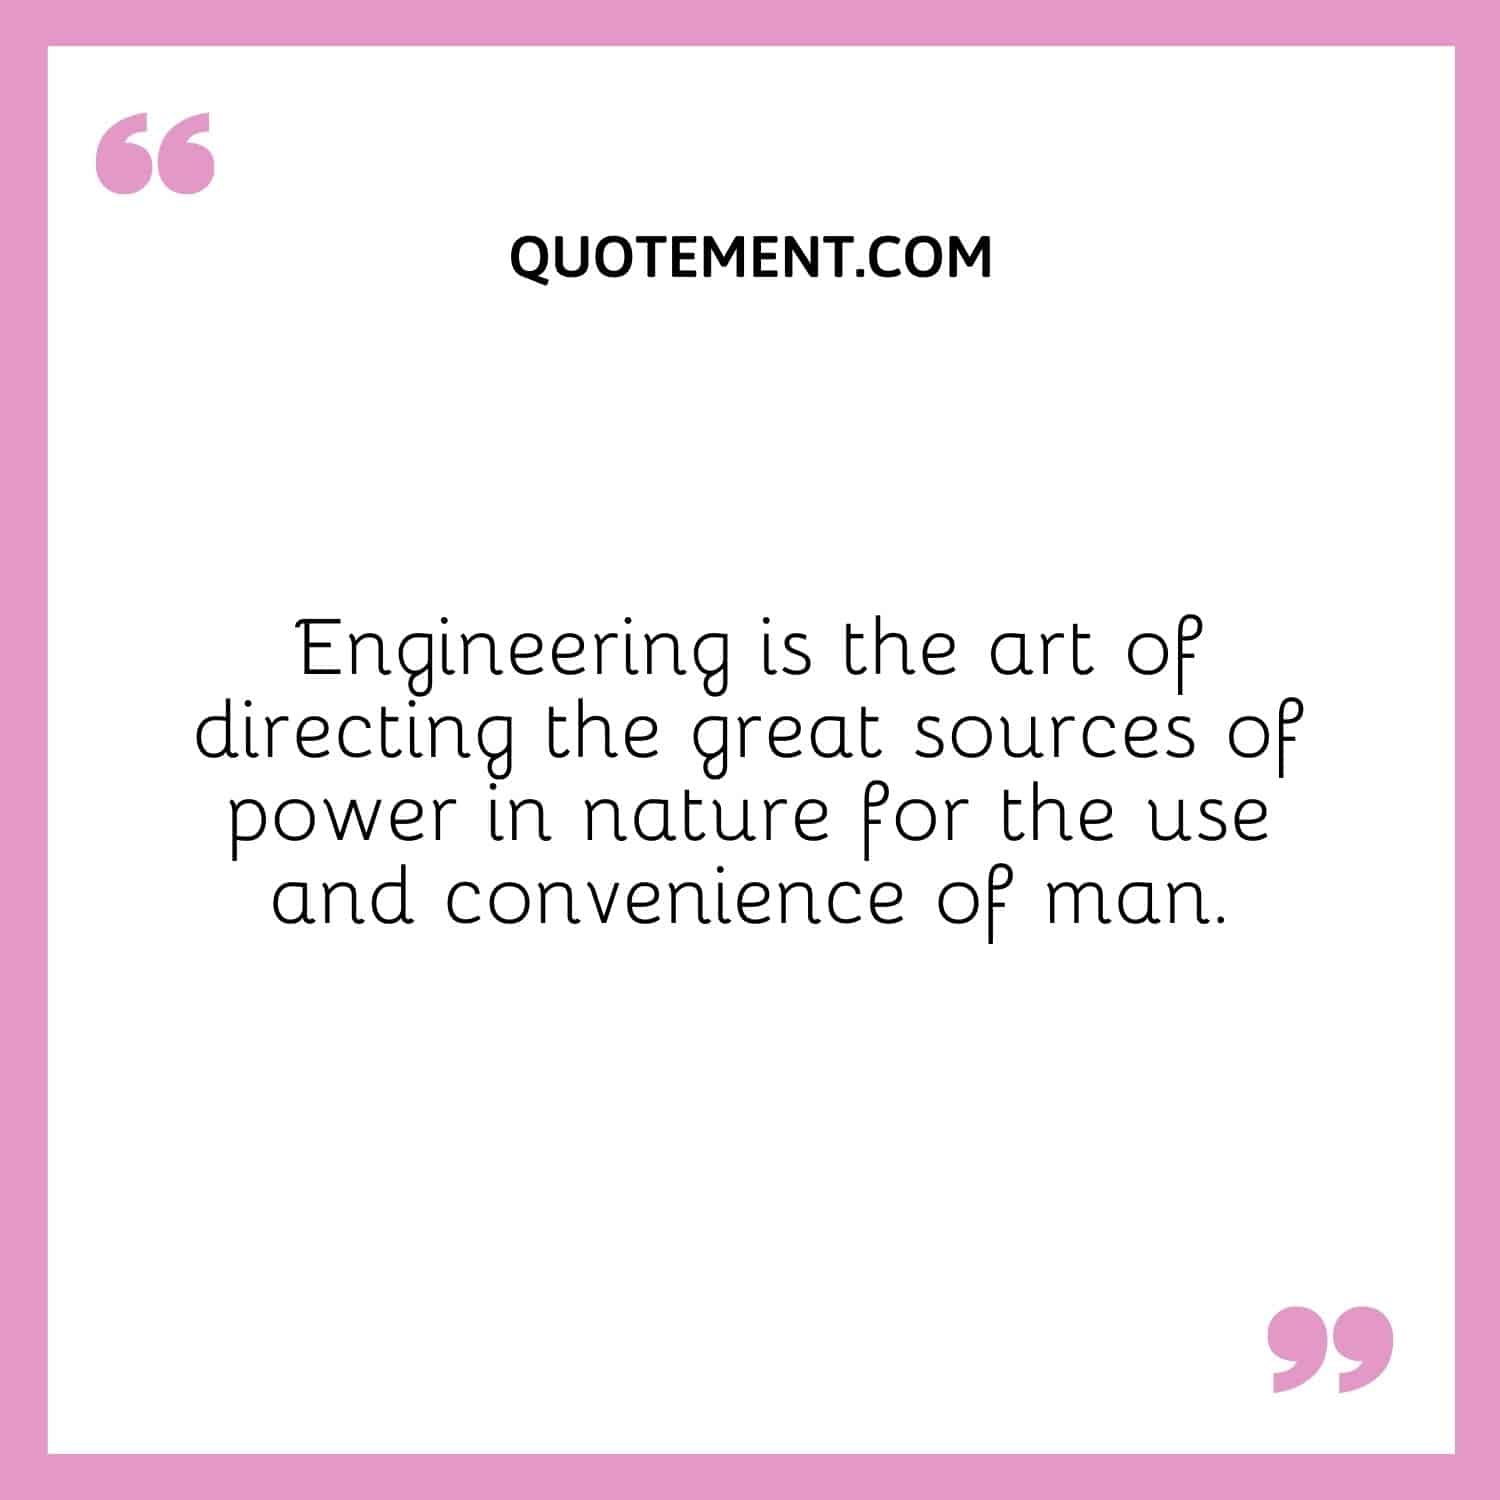 La ingeniería es el arte de dirigir las grandes fuentes de energía de la naturaleza para uso y conveniencia del hombre.